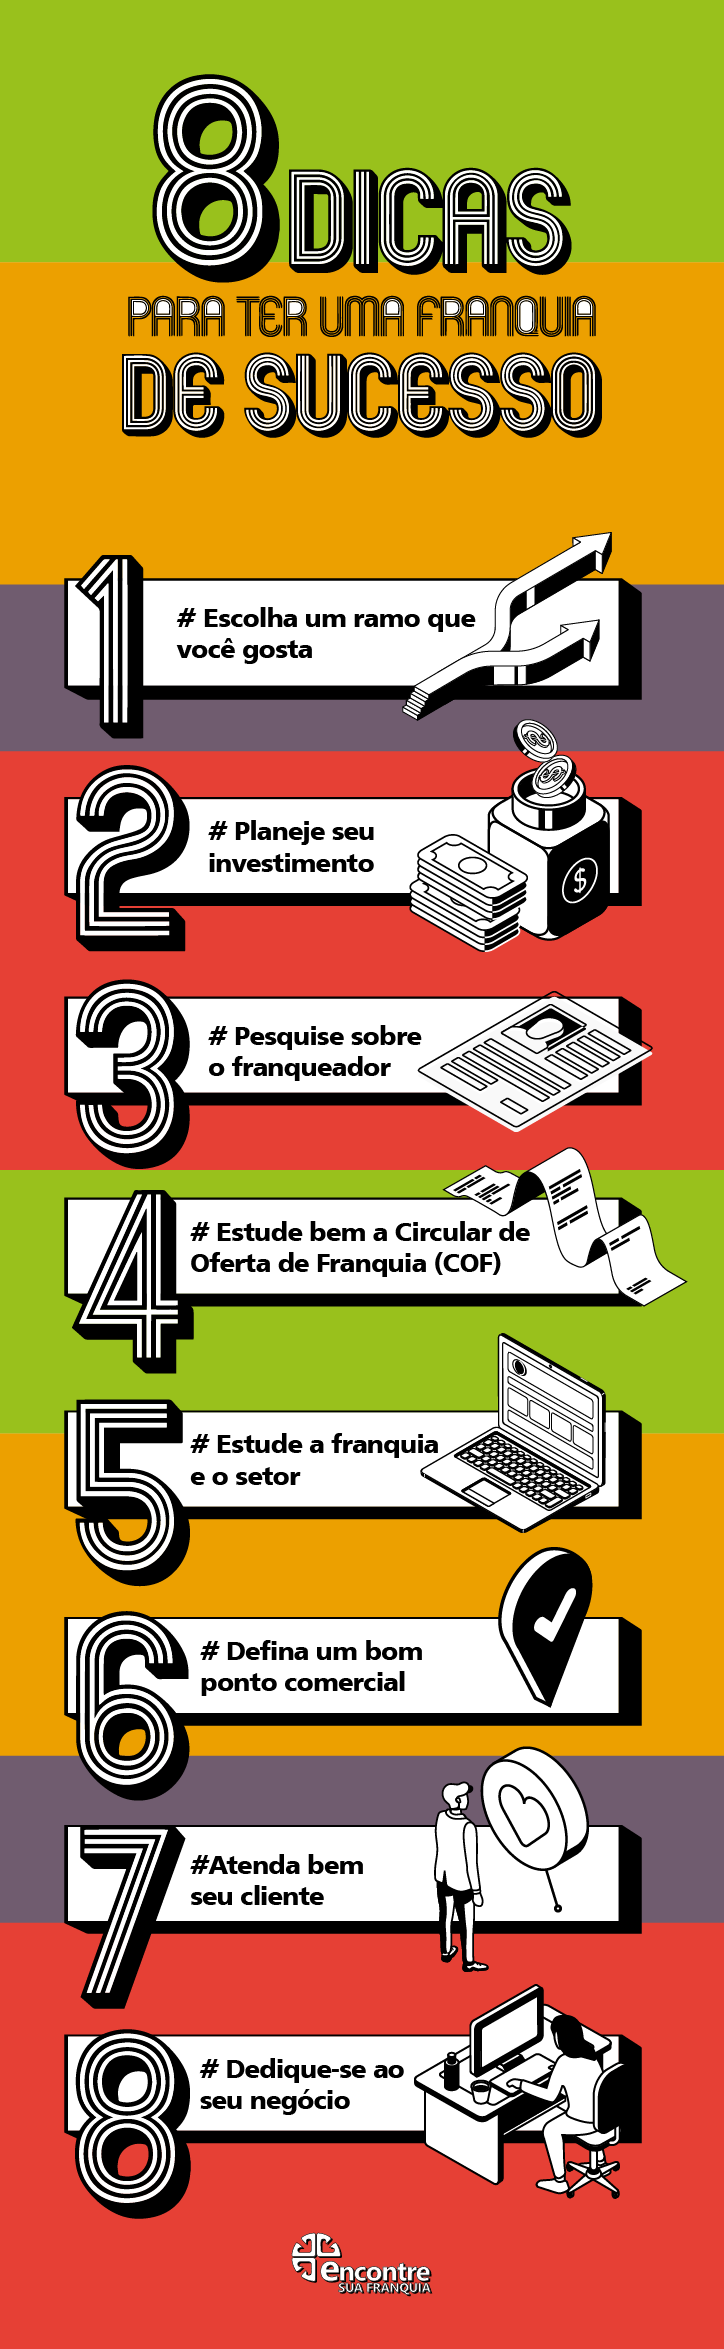 Infográfico "8 dicas para ter uma franquia de sucesso".